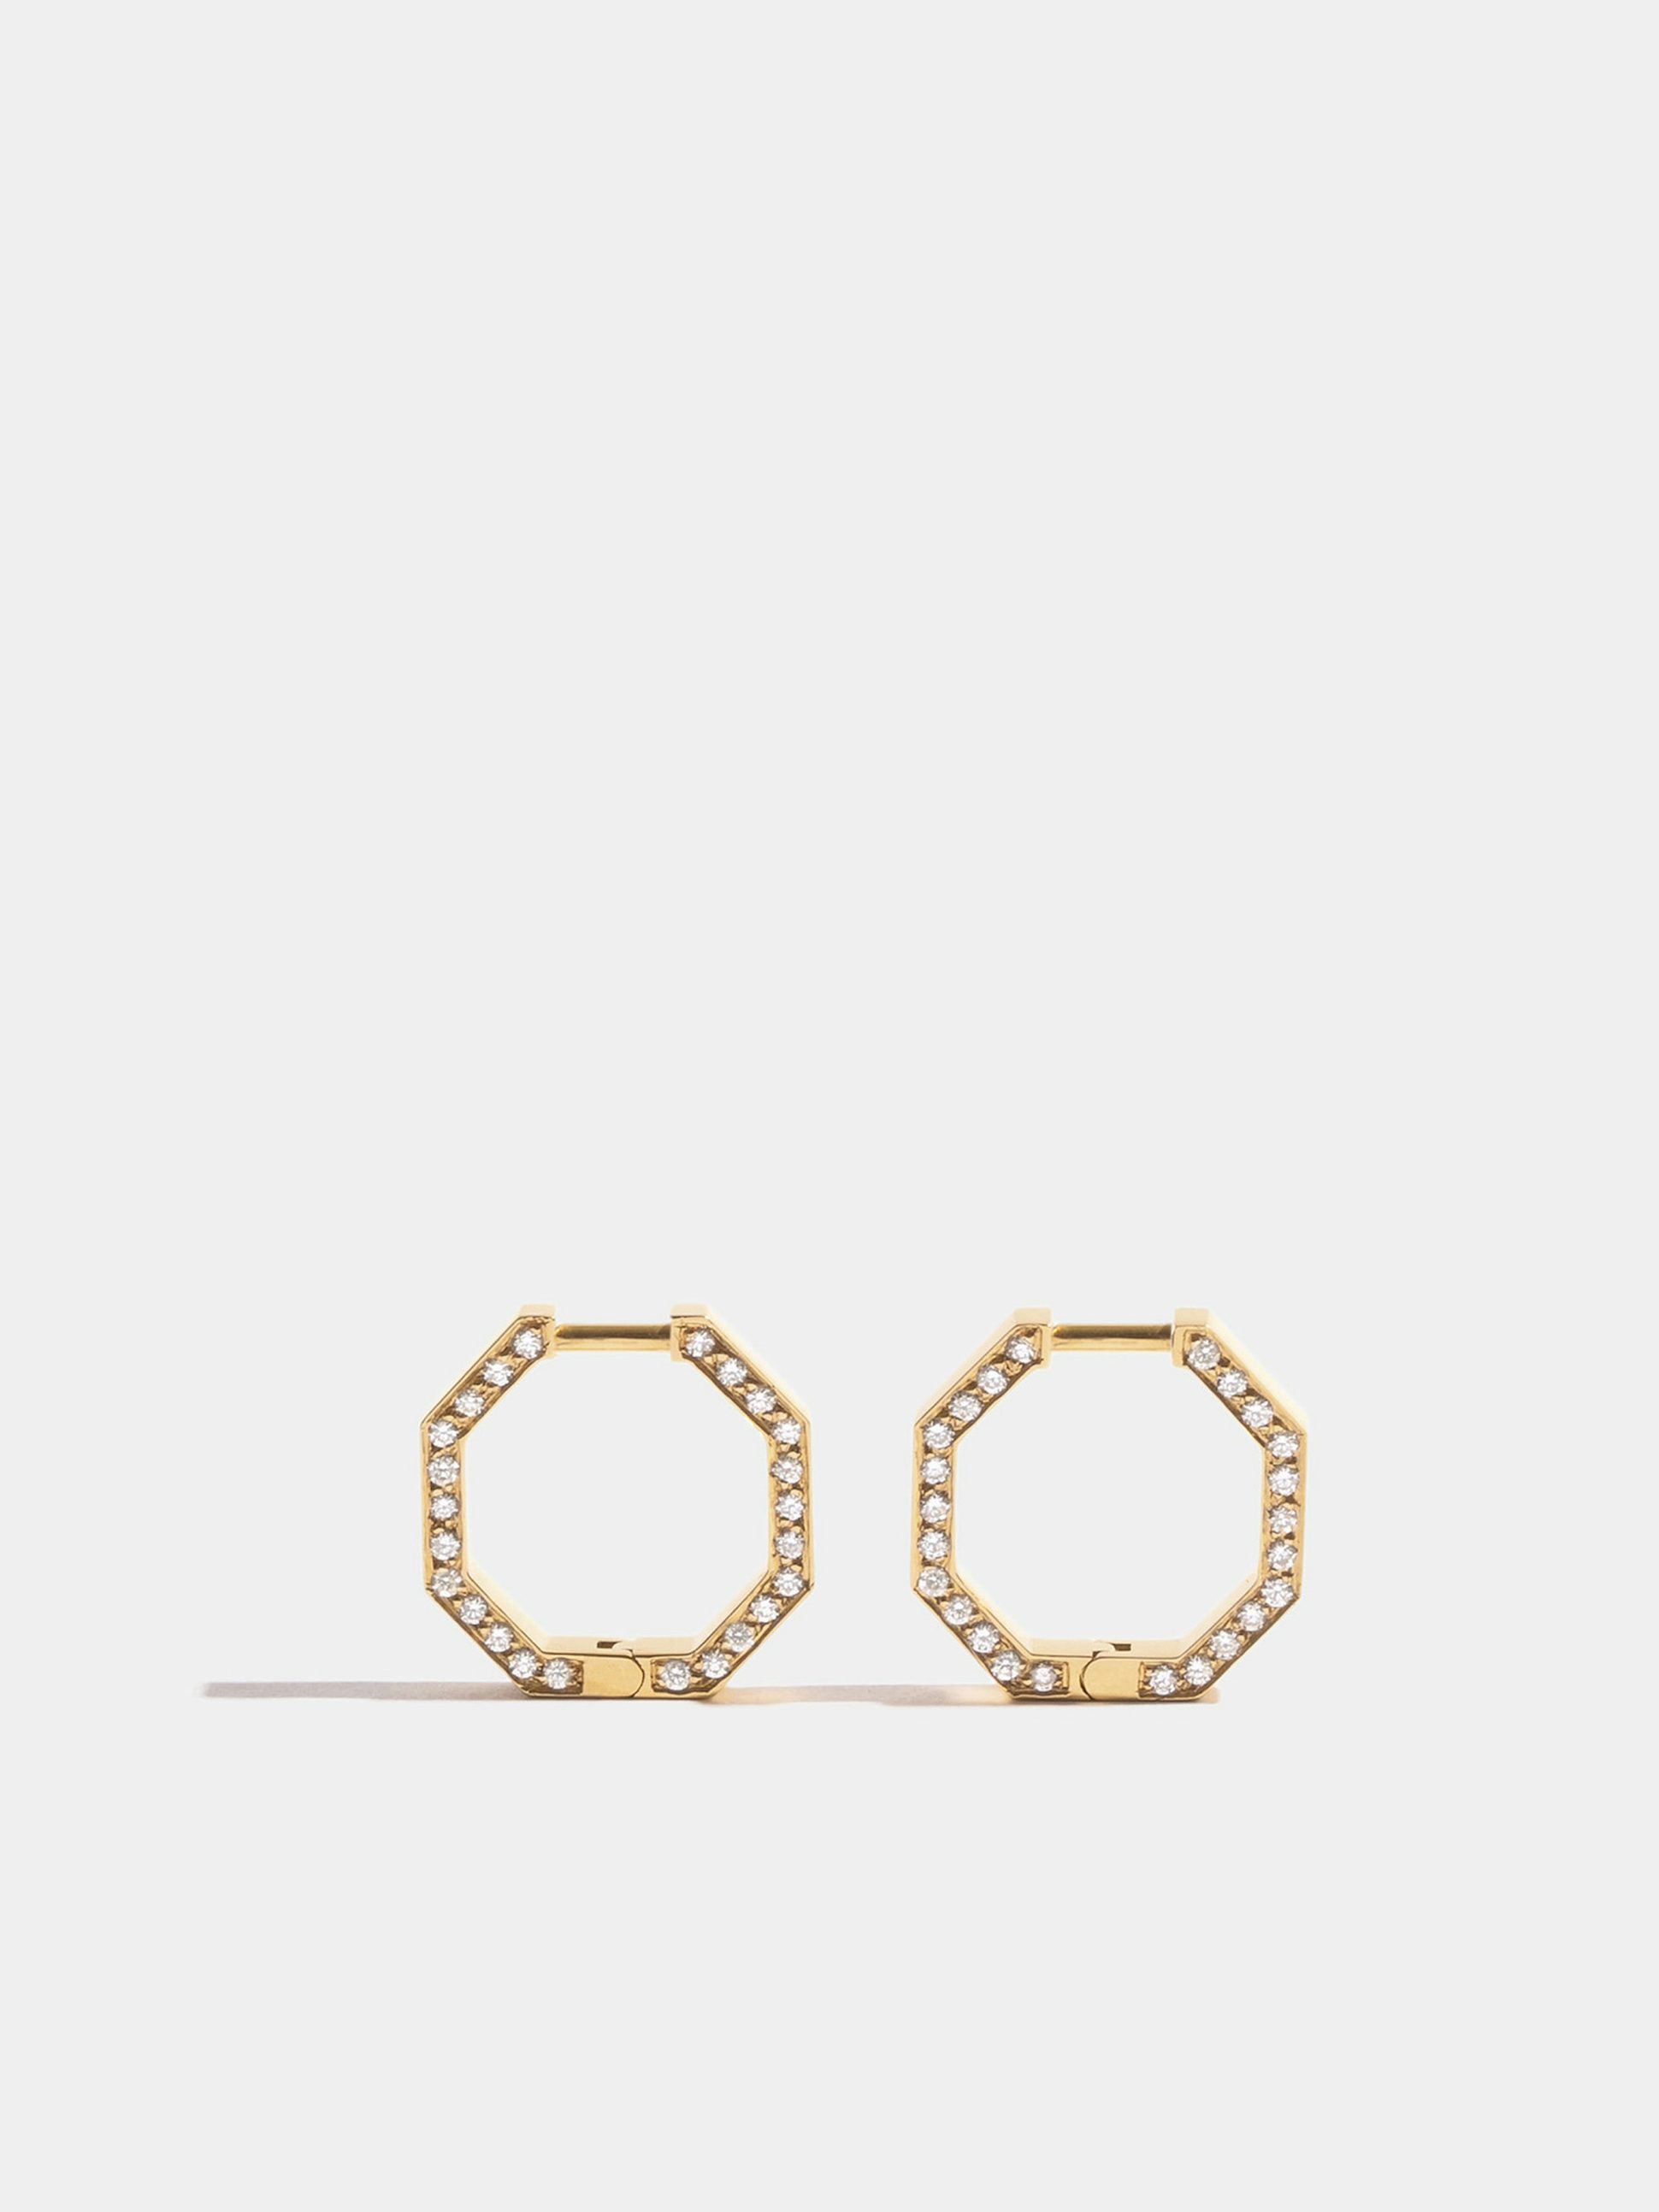 Boucles d'oreilles Octogone en Or jaune éthique 18 carats certifié Fairmined (13mm) et pavées de diamants de synthèse sur la tranche, la paire.